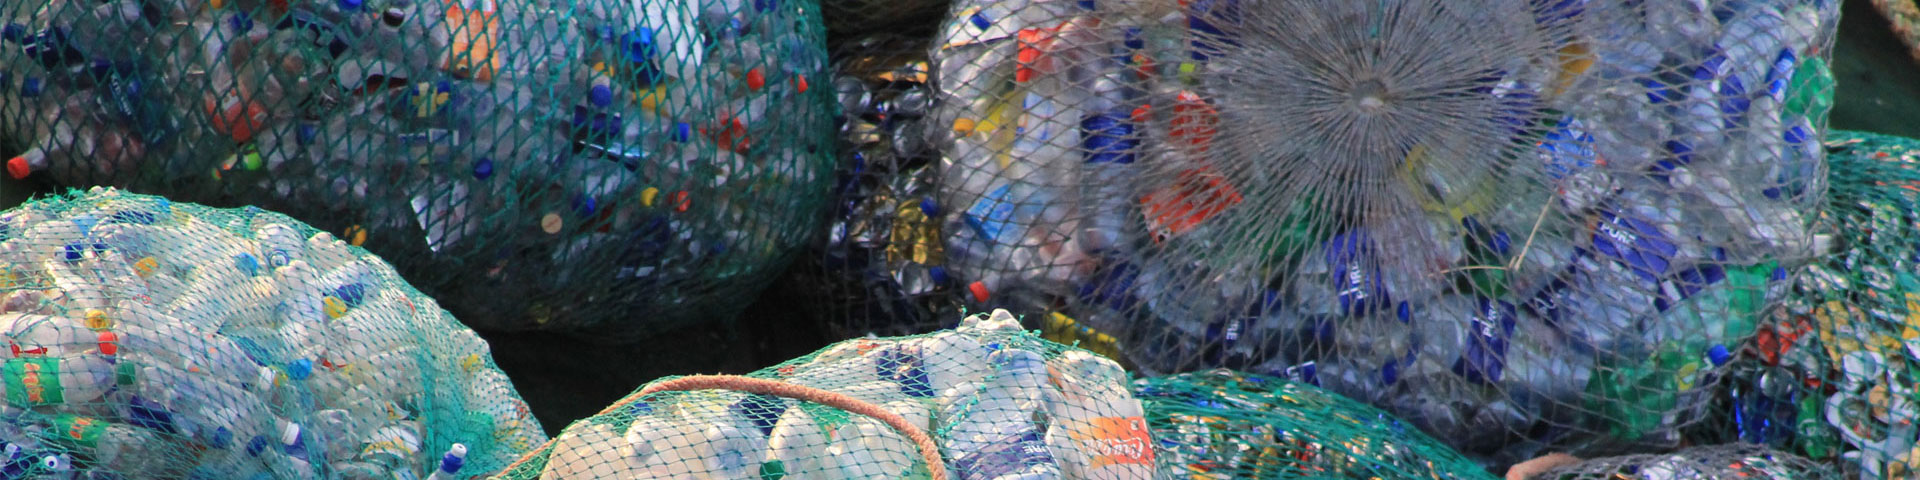 Plastic waste in sacks